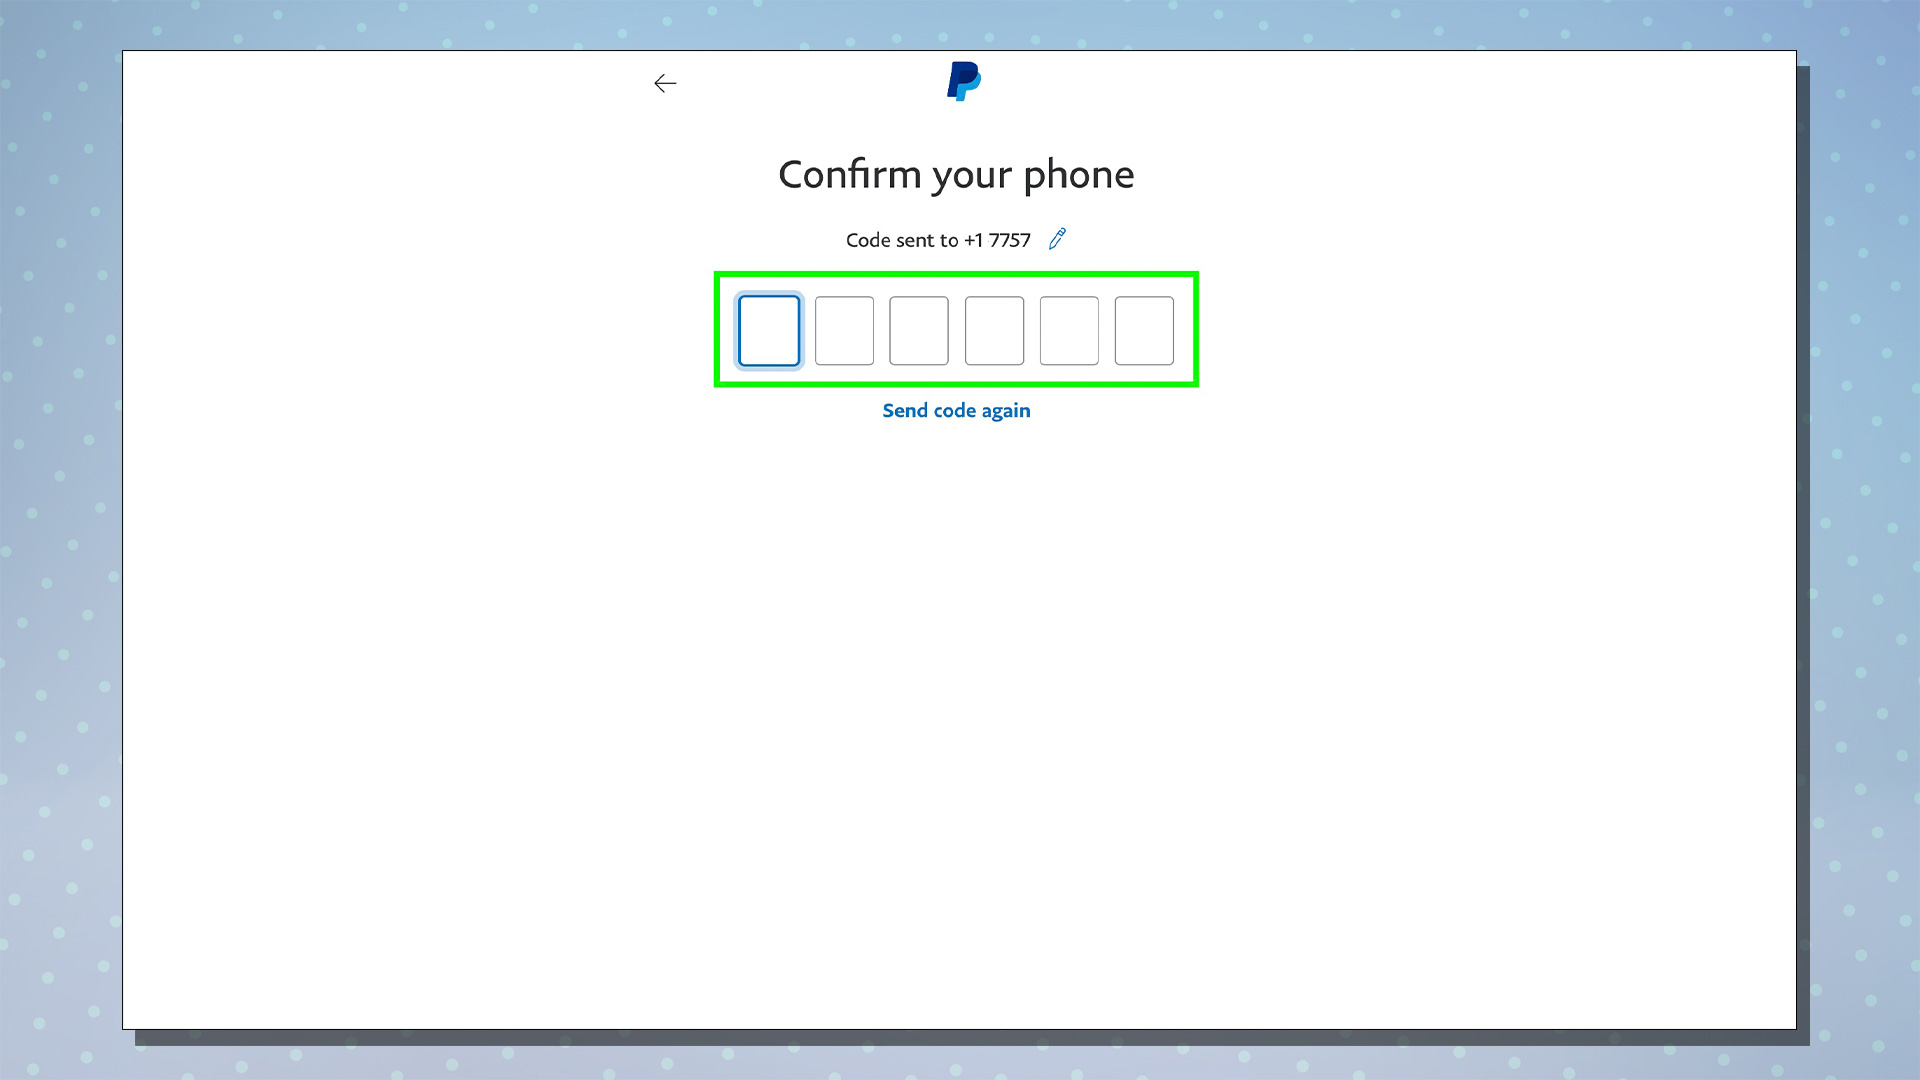 PayPal kurulum sürecini gösteren bir ekran görüntüsü.  Bu ekran, cep telefonu numarası onay kodunu gösterir.